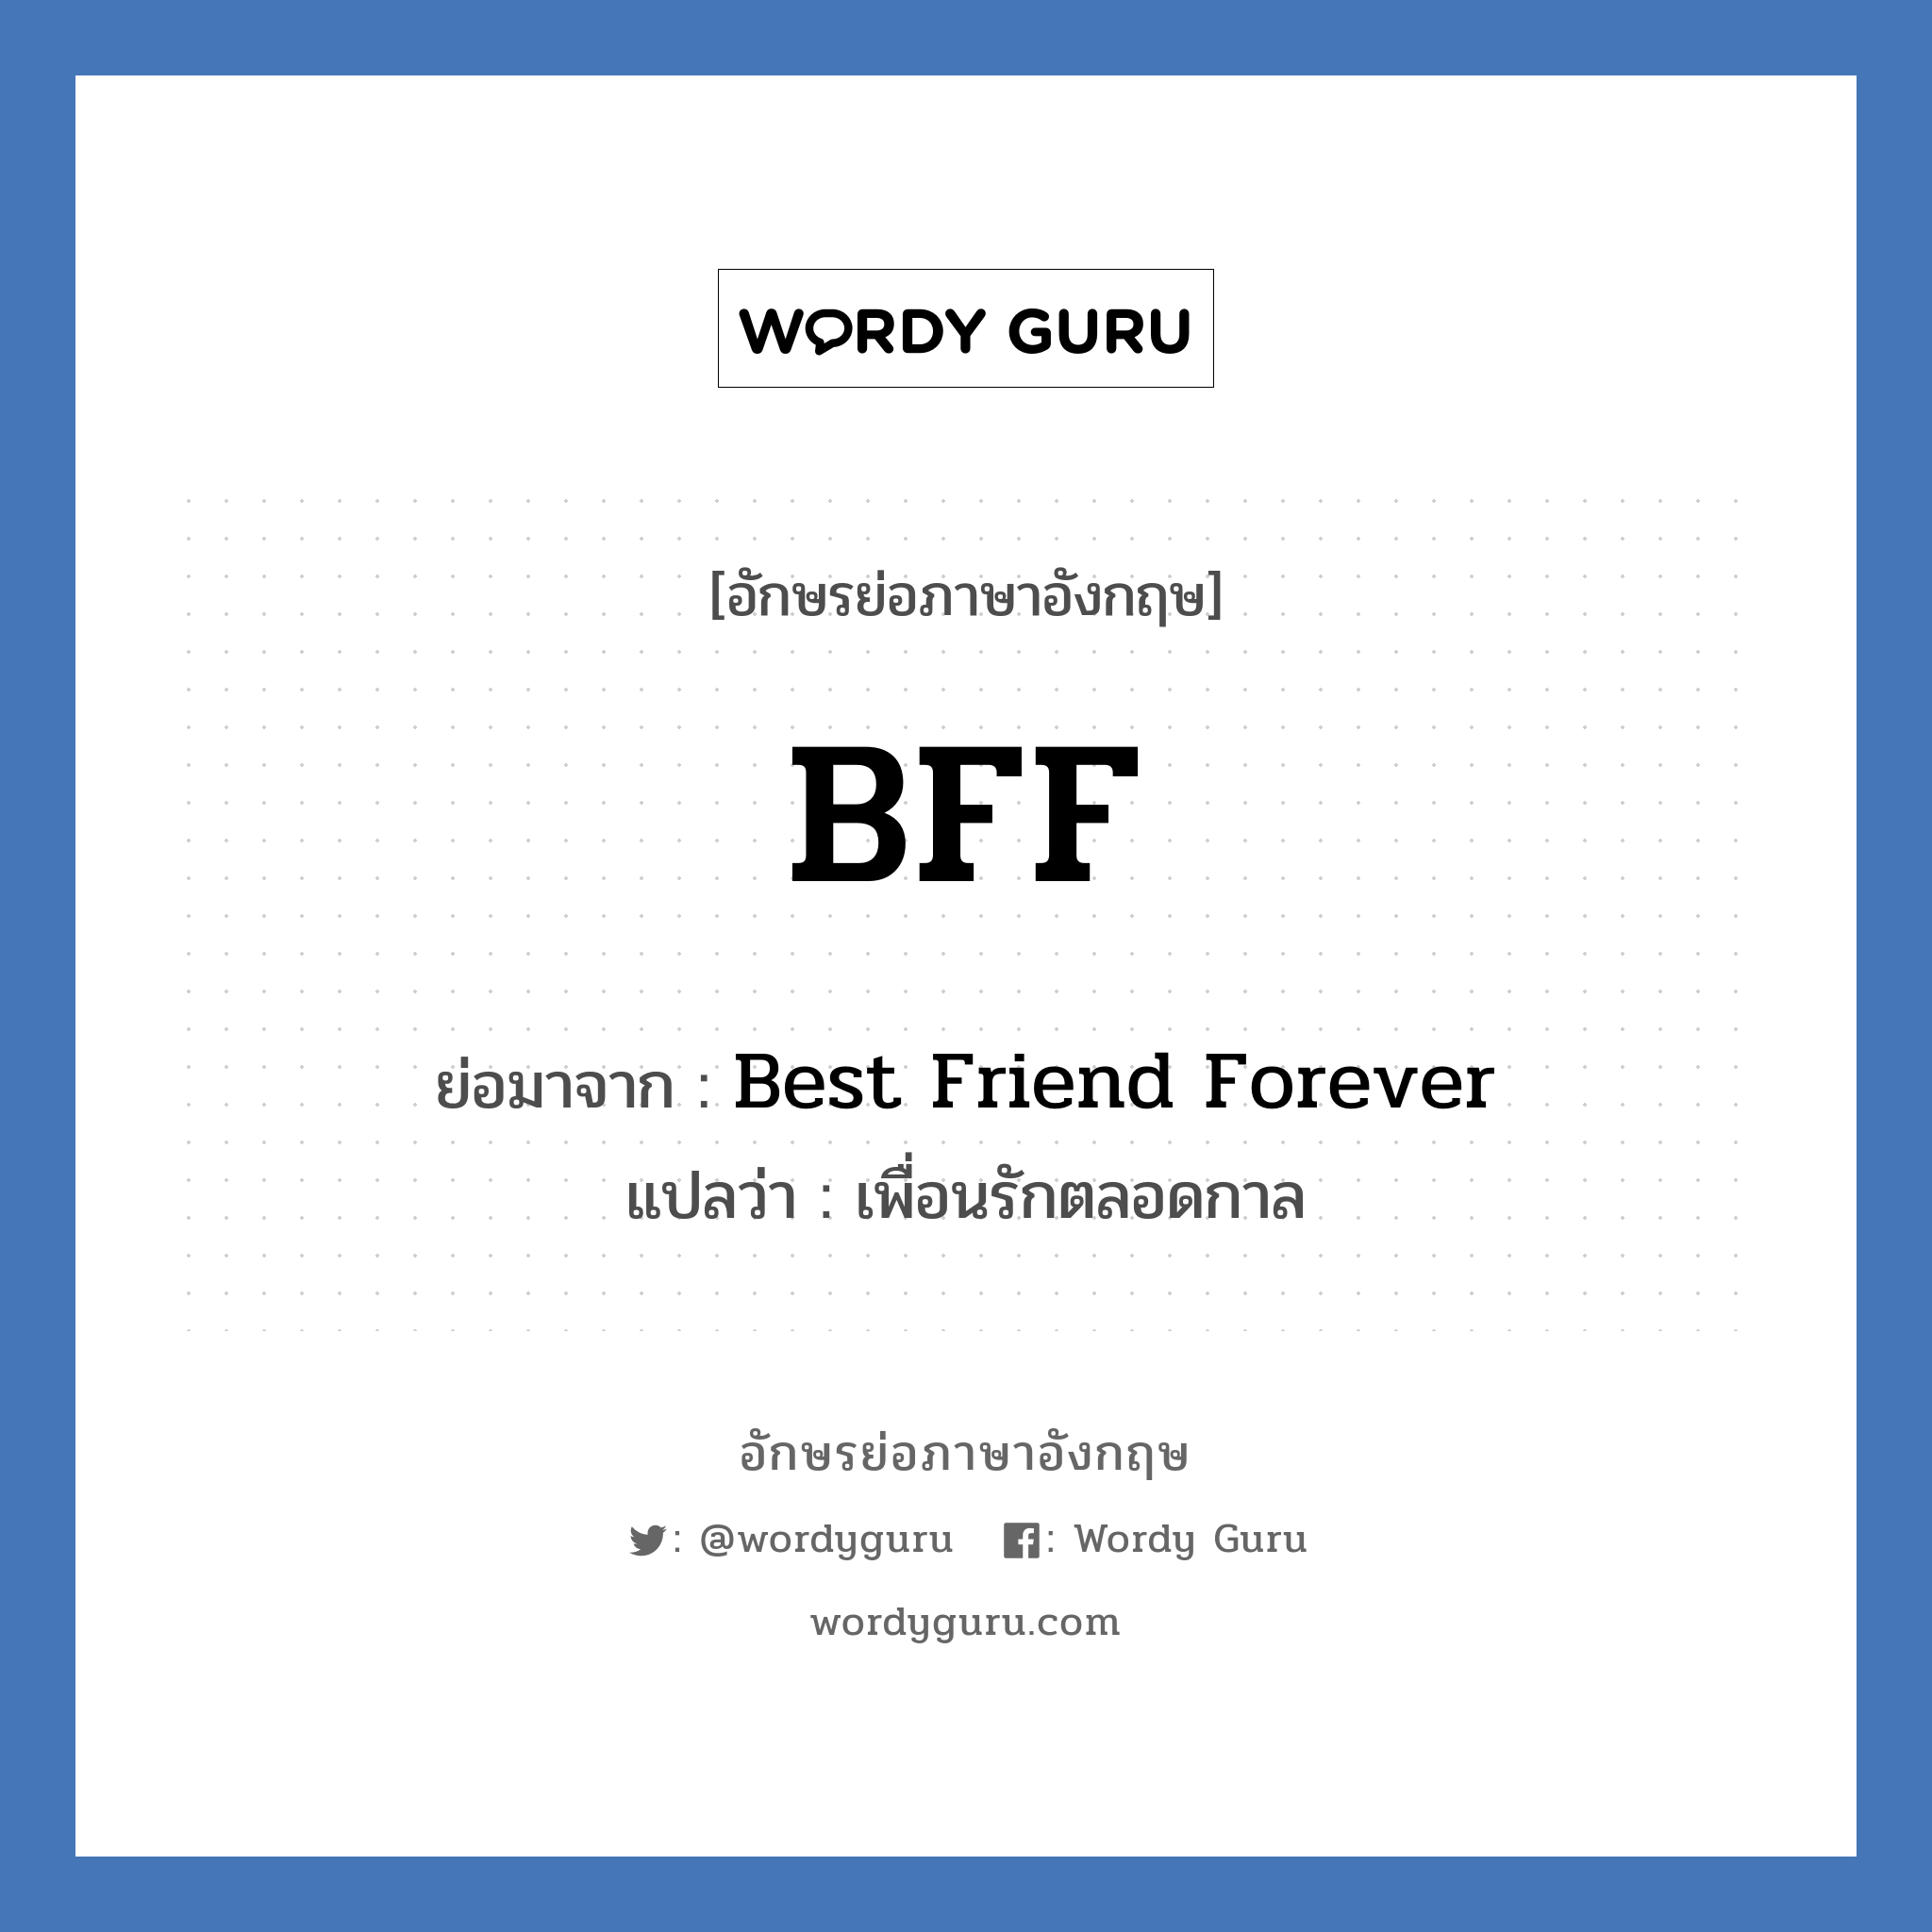 Best Friend Forever คำย่อคือ? แปลว่า?, อักษรย่อภาษาอังกฤษ Best Friend Forever ย่อมาจาก BFF แปลว่า เพื่อนรักตลอดกาล